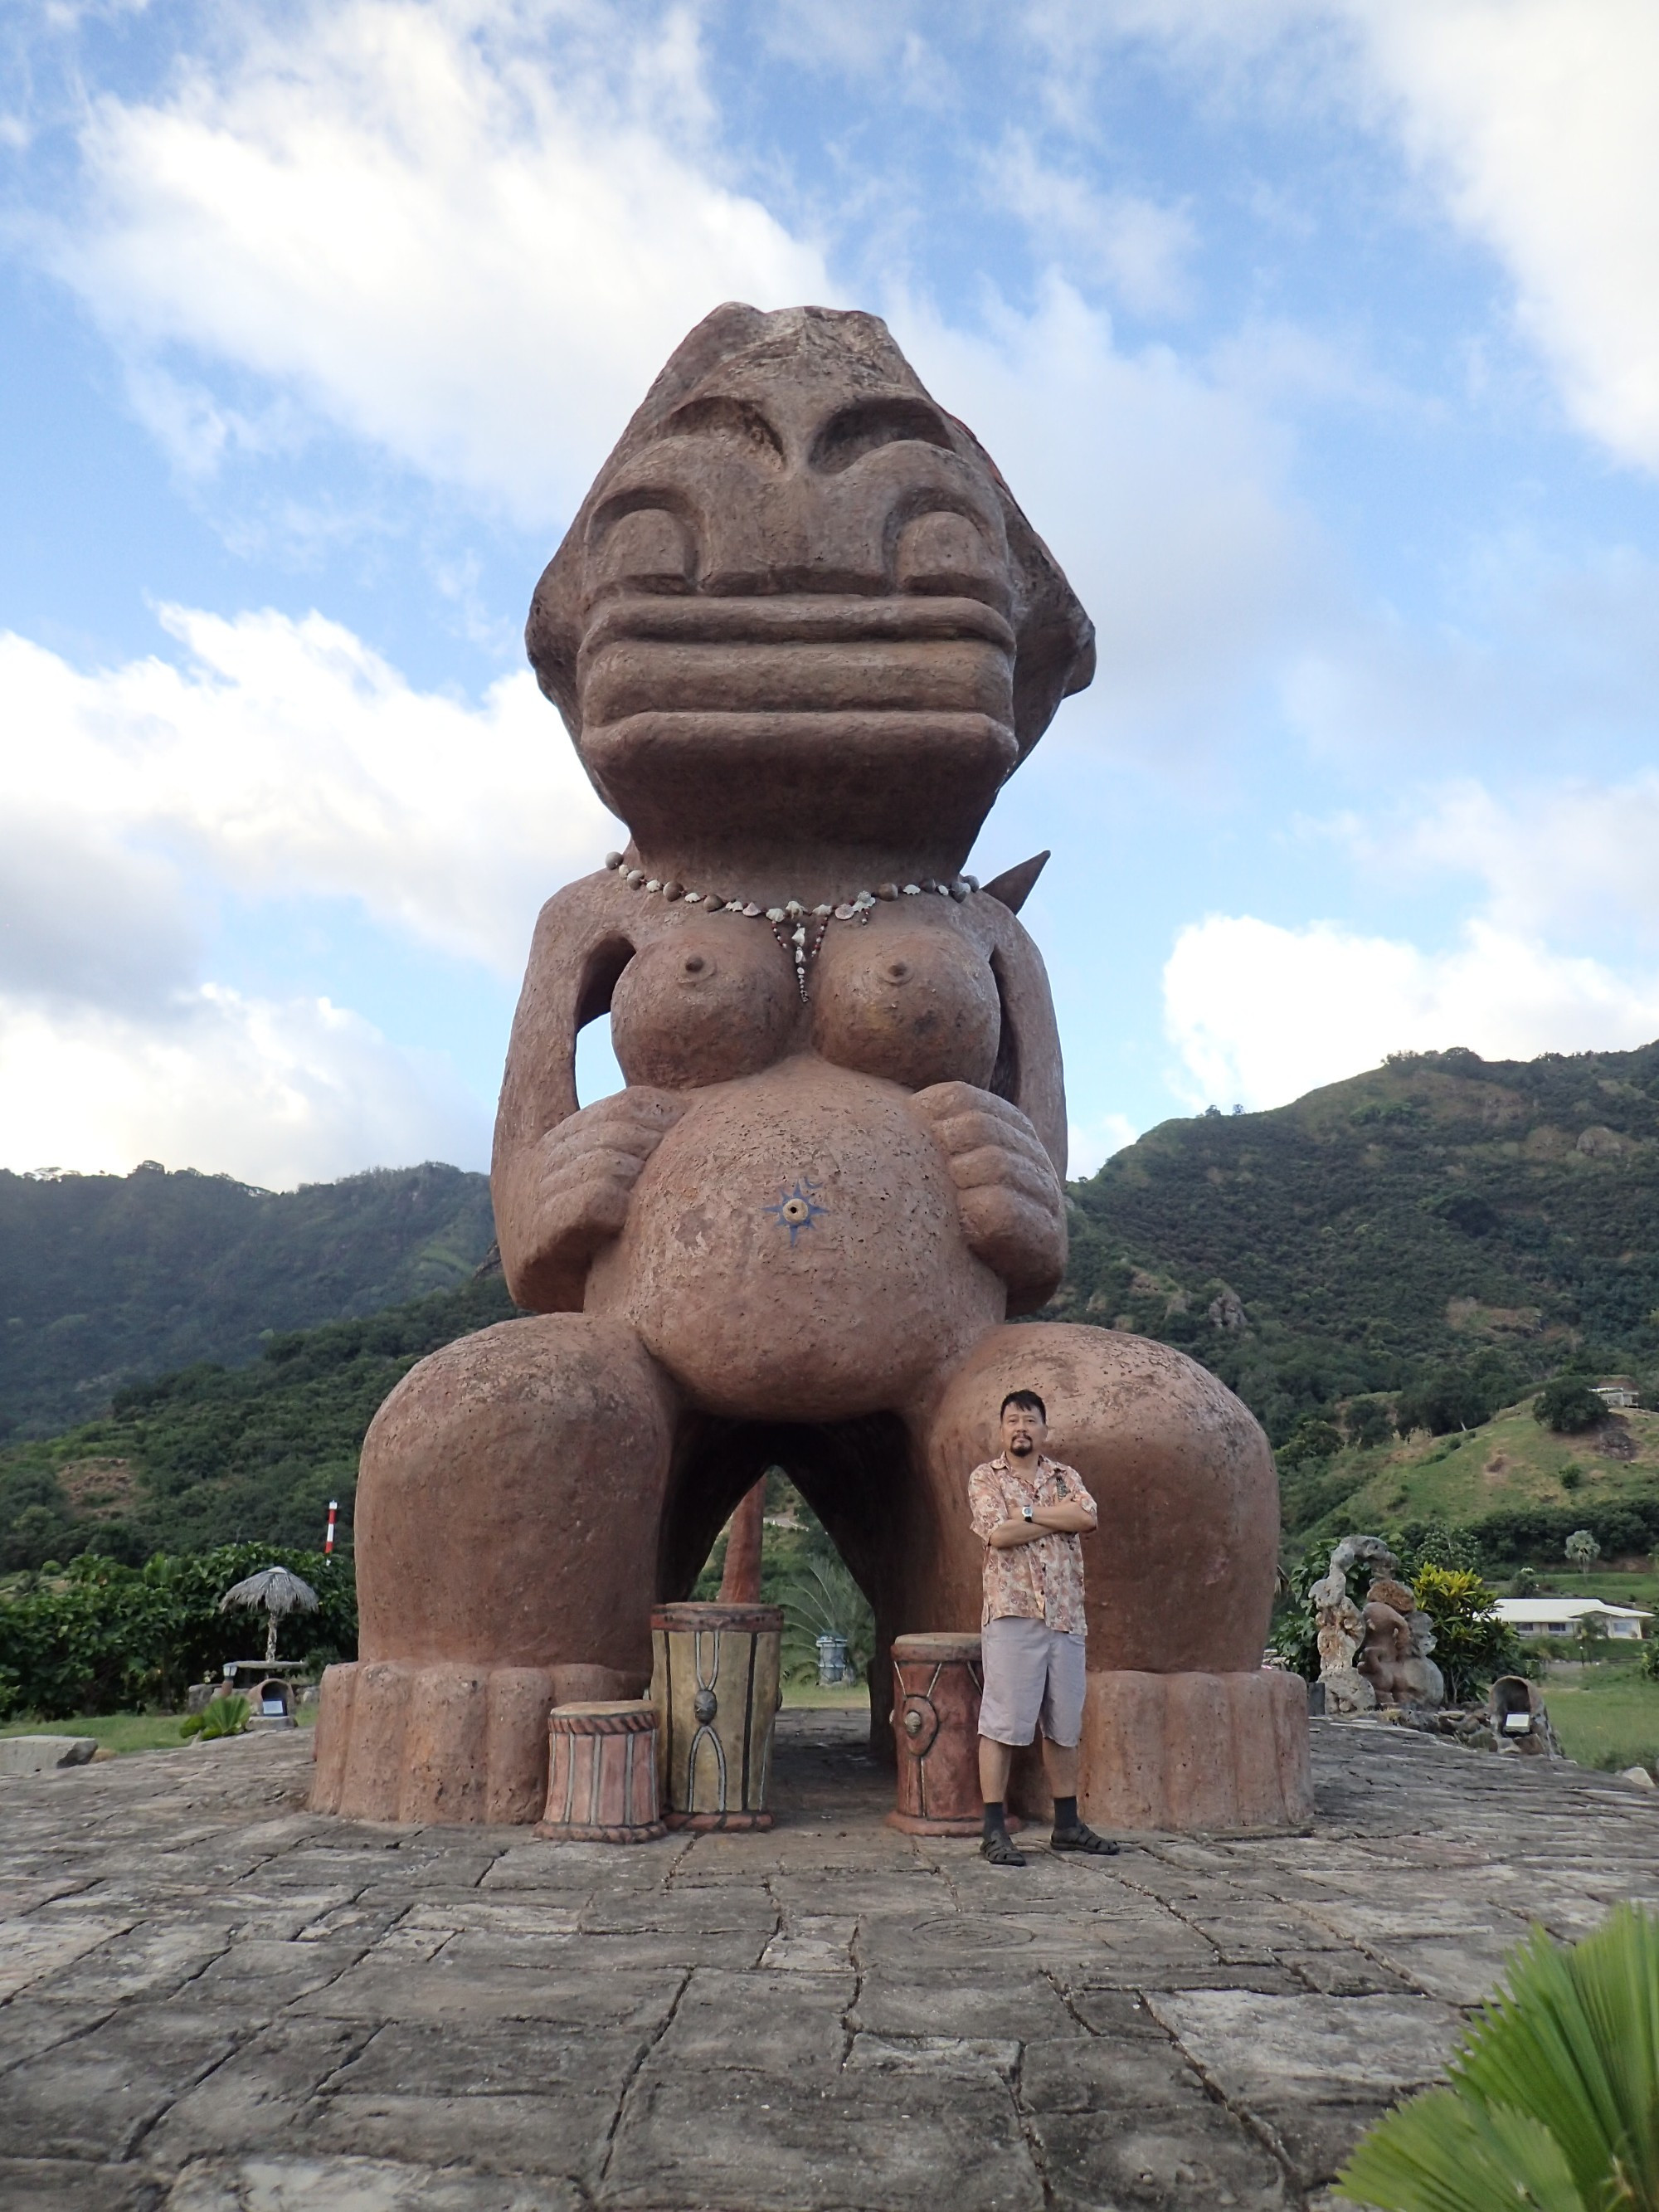 Tiki Tuhiva Giant Statue, French Polynesia